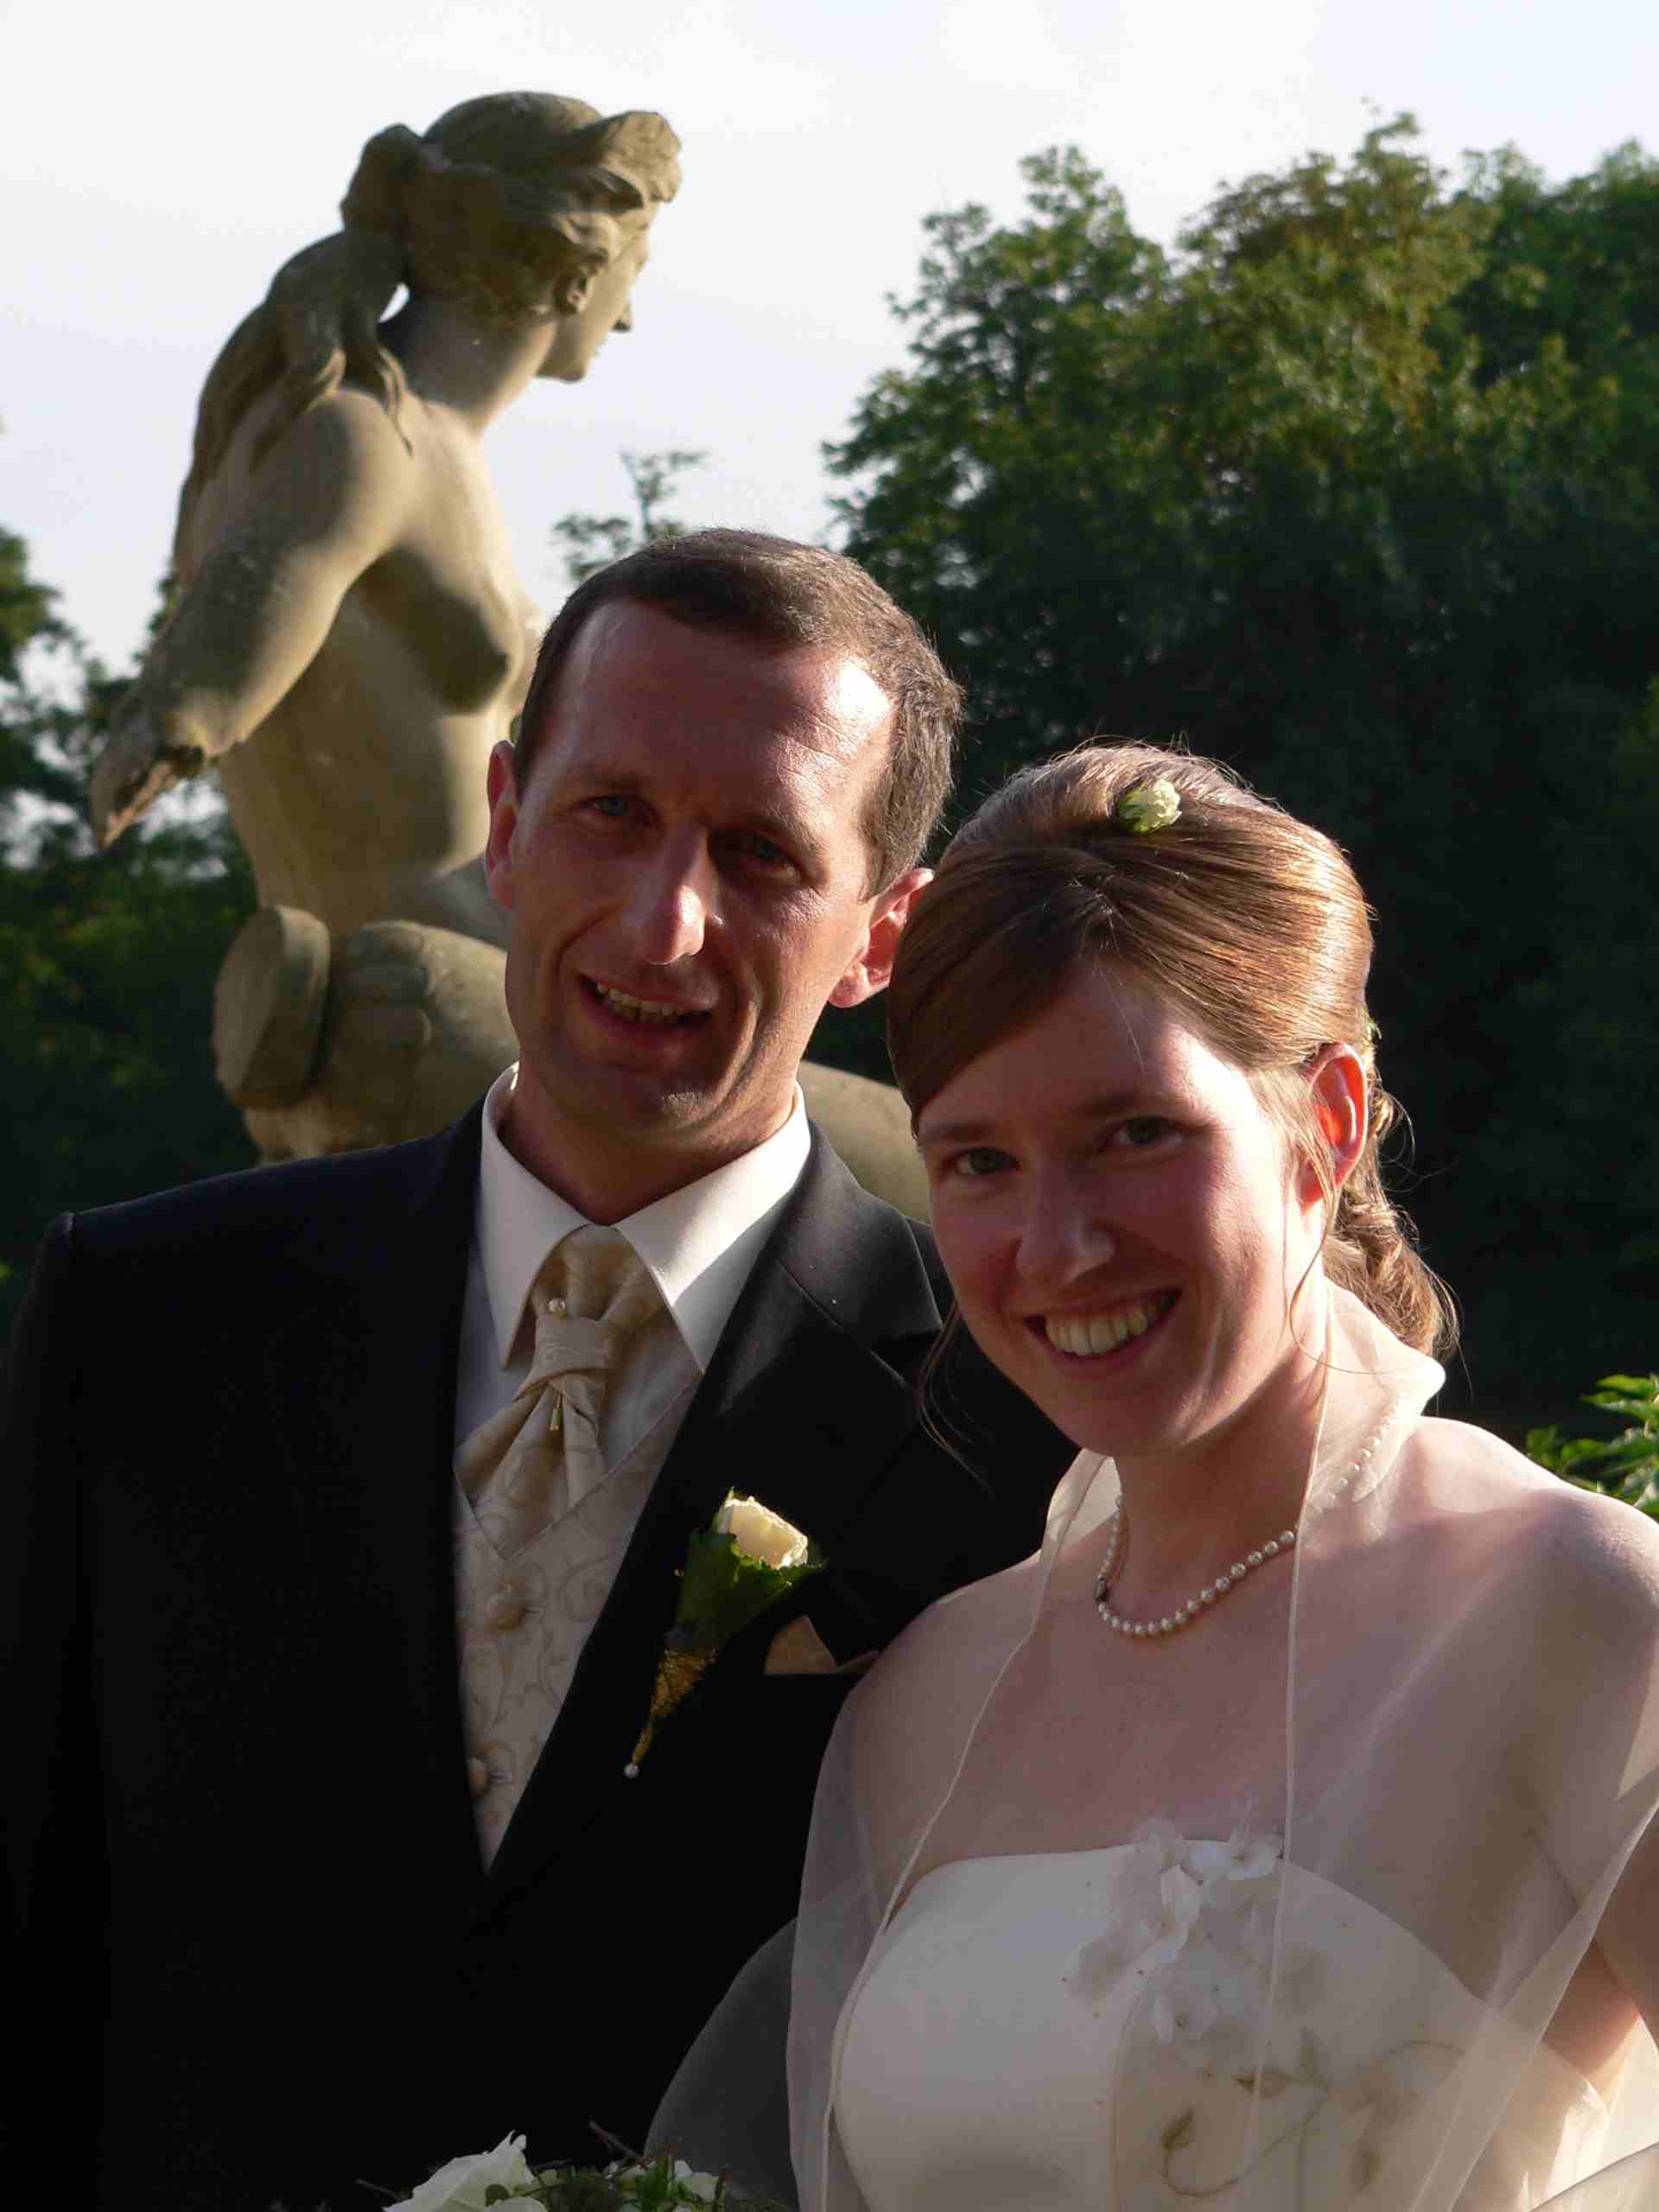 offizielles Hochzeitsphoto: Holger zwischen der Frau mit dem steinernen Herz und Andrea